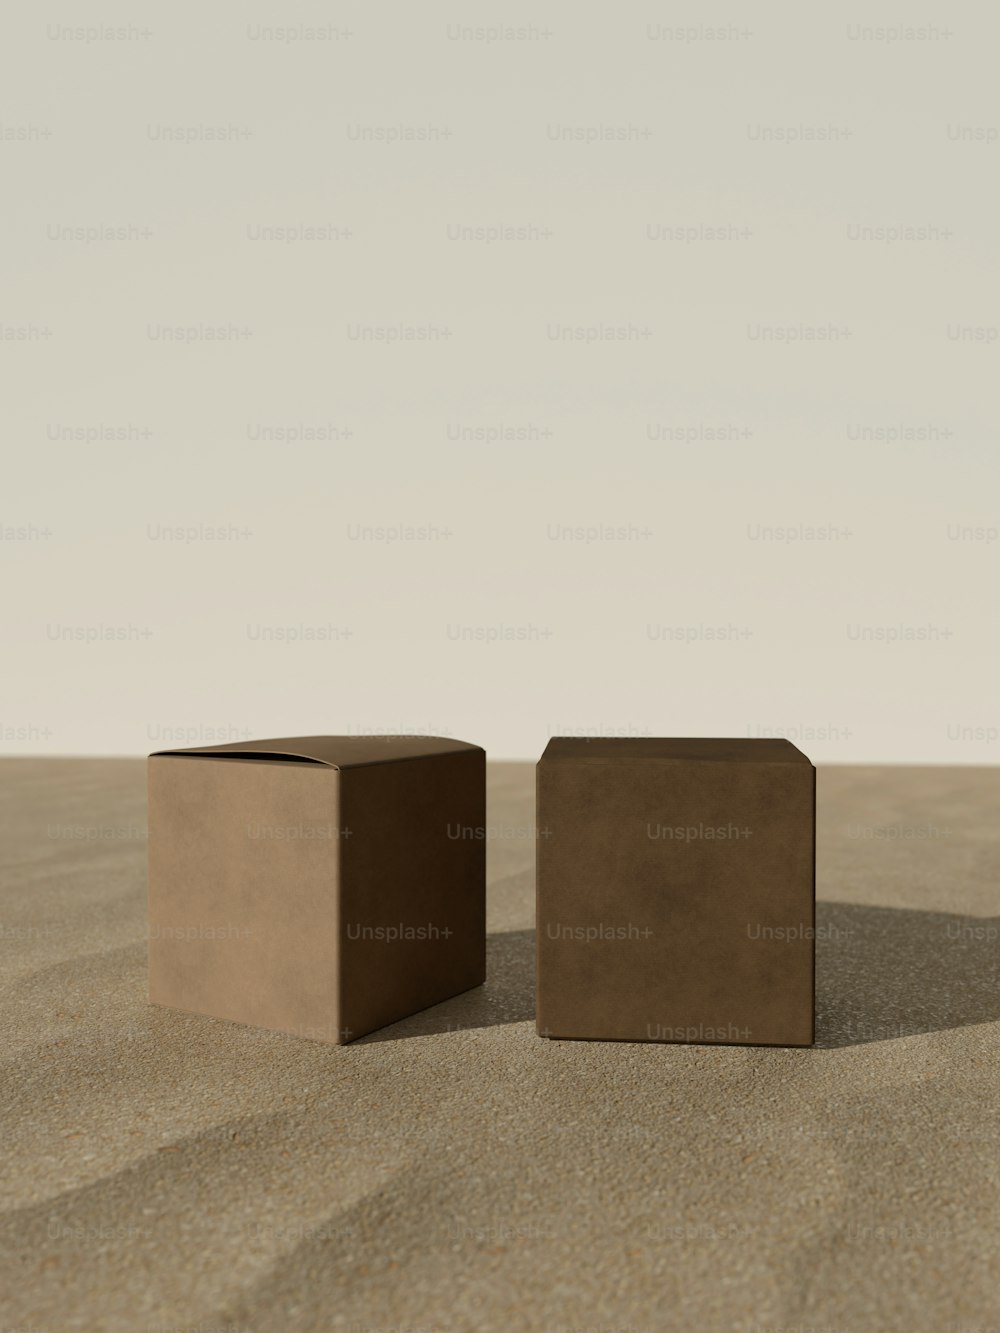 砂浜の上に座っているいくつかの箱